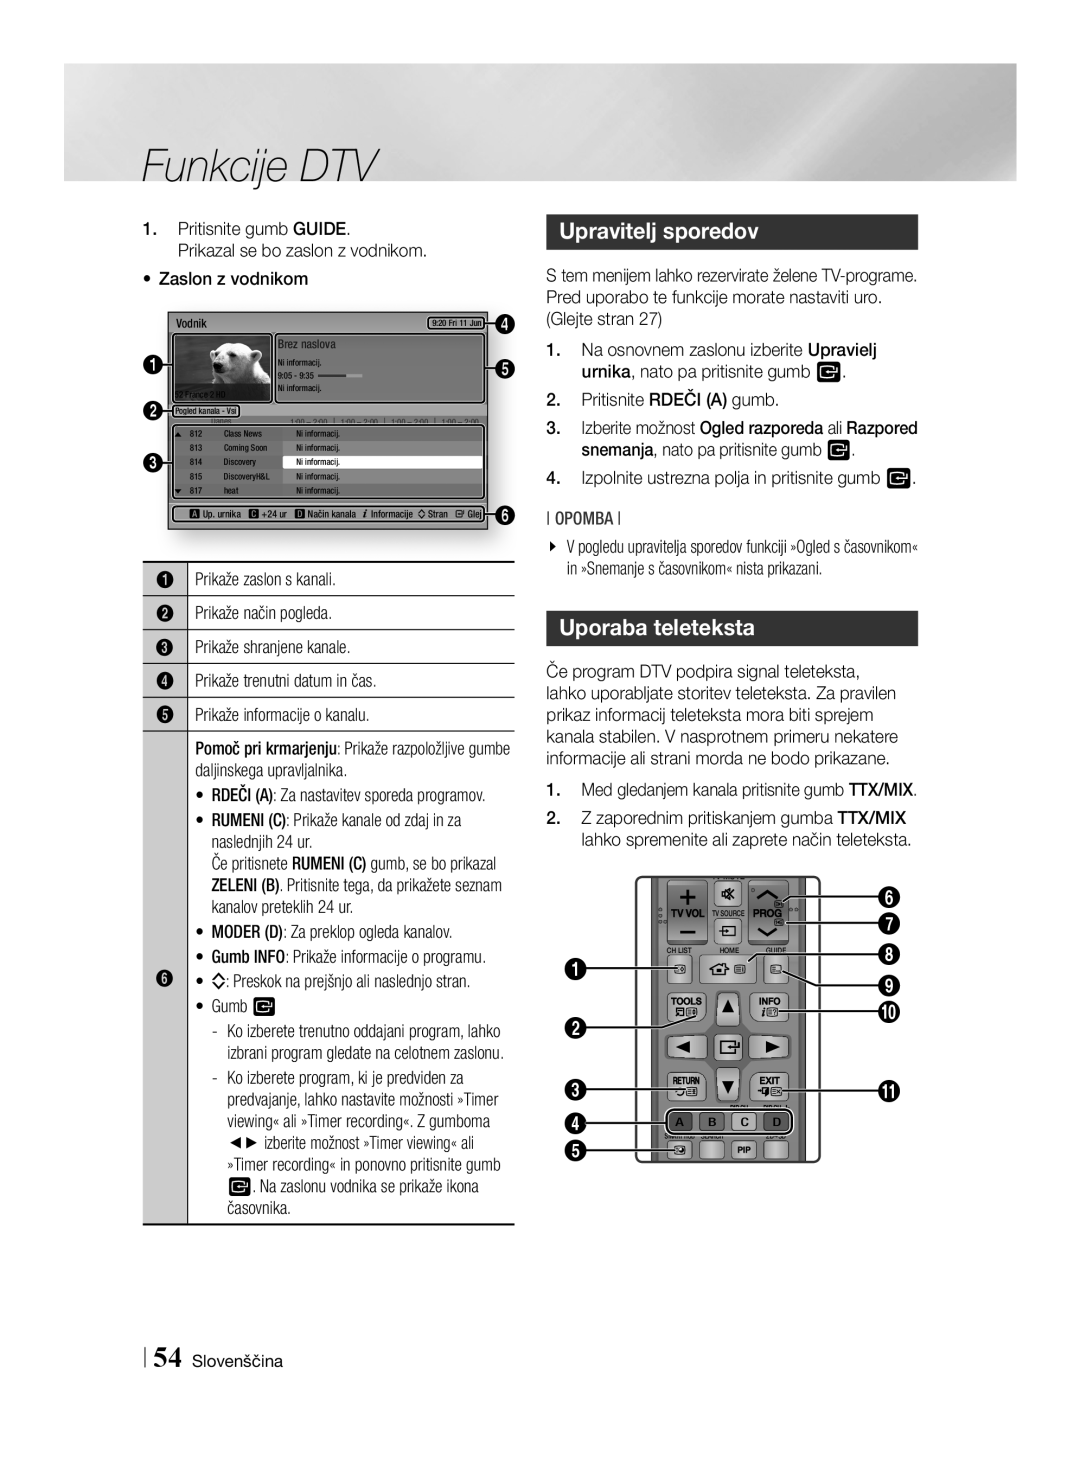 Samsung BD-E8300/EN, BD-E8900/EN, BD-E8500/EN manual Upravitelj sporedov, Uporaba teleteksta, Funkcije DTV, Opomba 